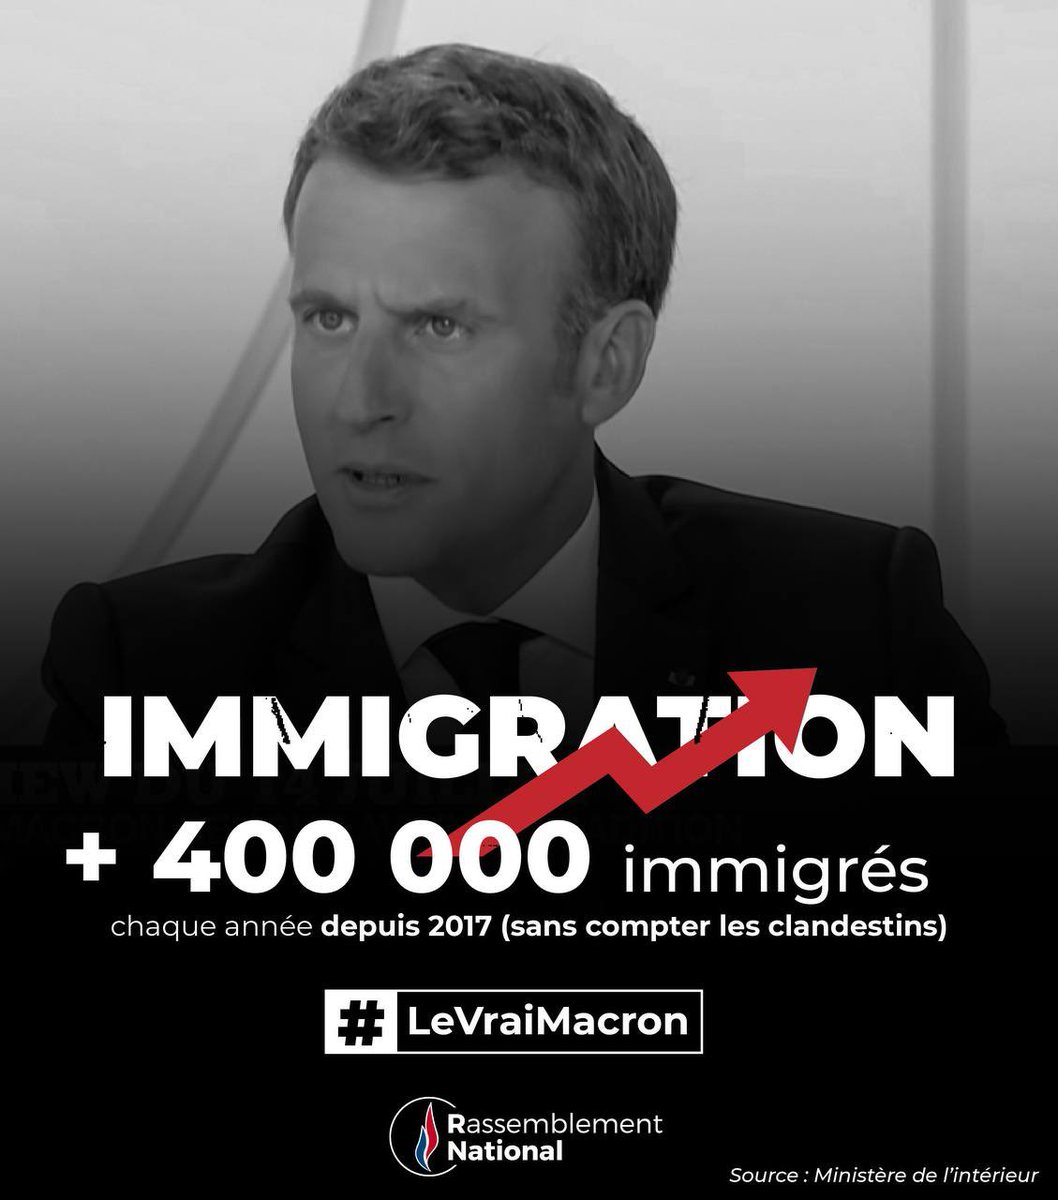 Voici #LeVraiMacron👇🏻
Pas besoin de promesses quand nous pouvons constater SON bilan. 
#Macron20h